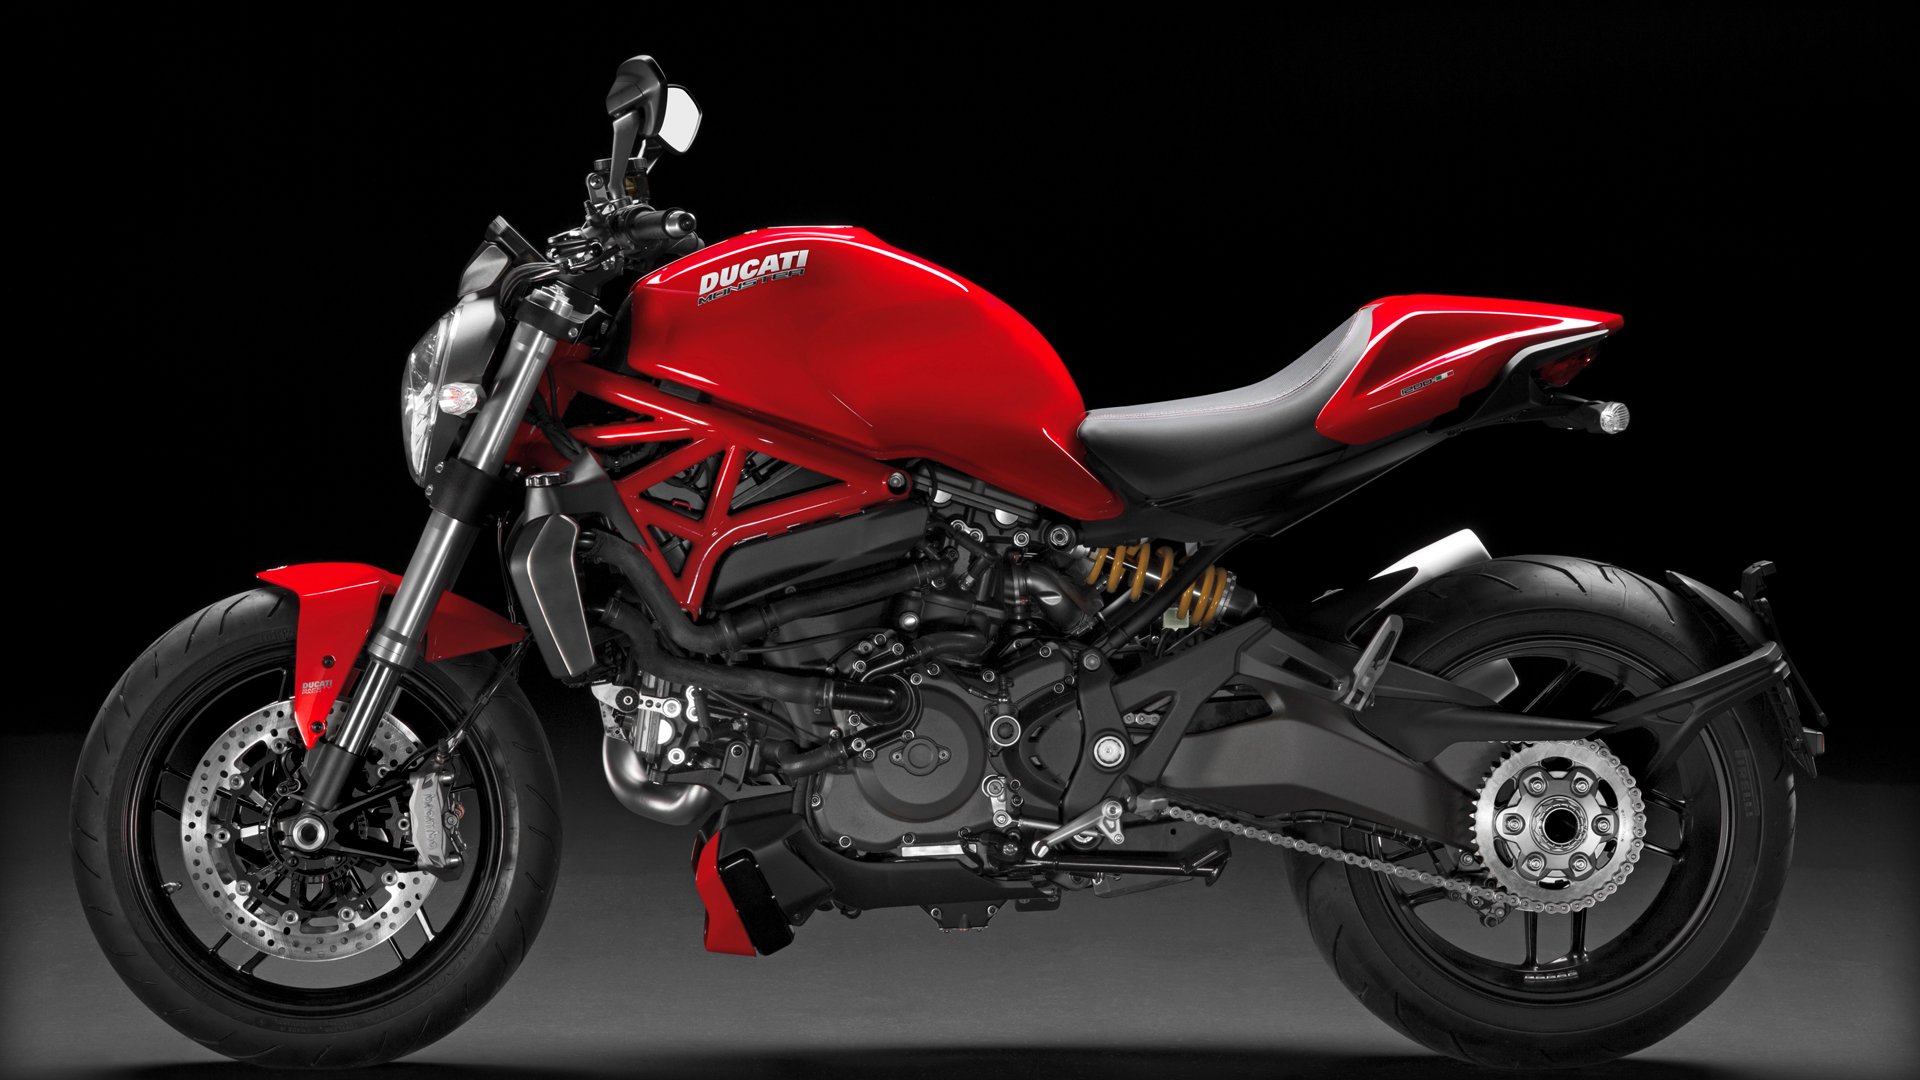 Ducati, Ducati Monster 1200 2014 tampak samping: Ducati Monster 1200 Resmi Diperkenalkan [with High Quality Photos]